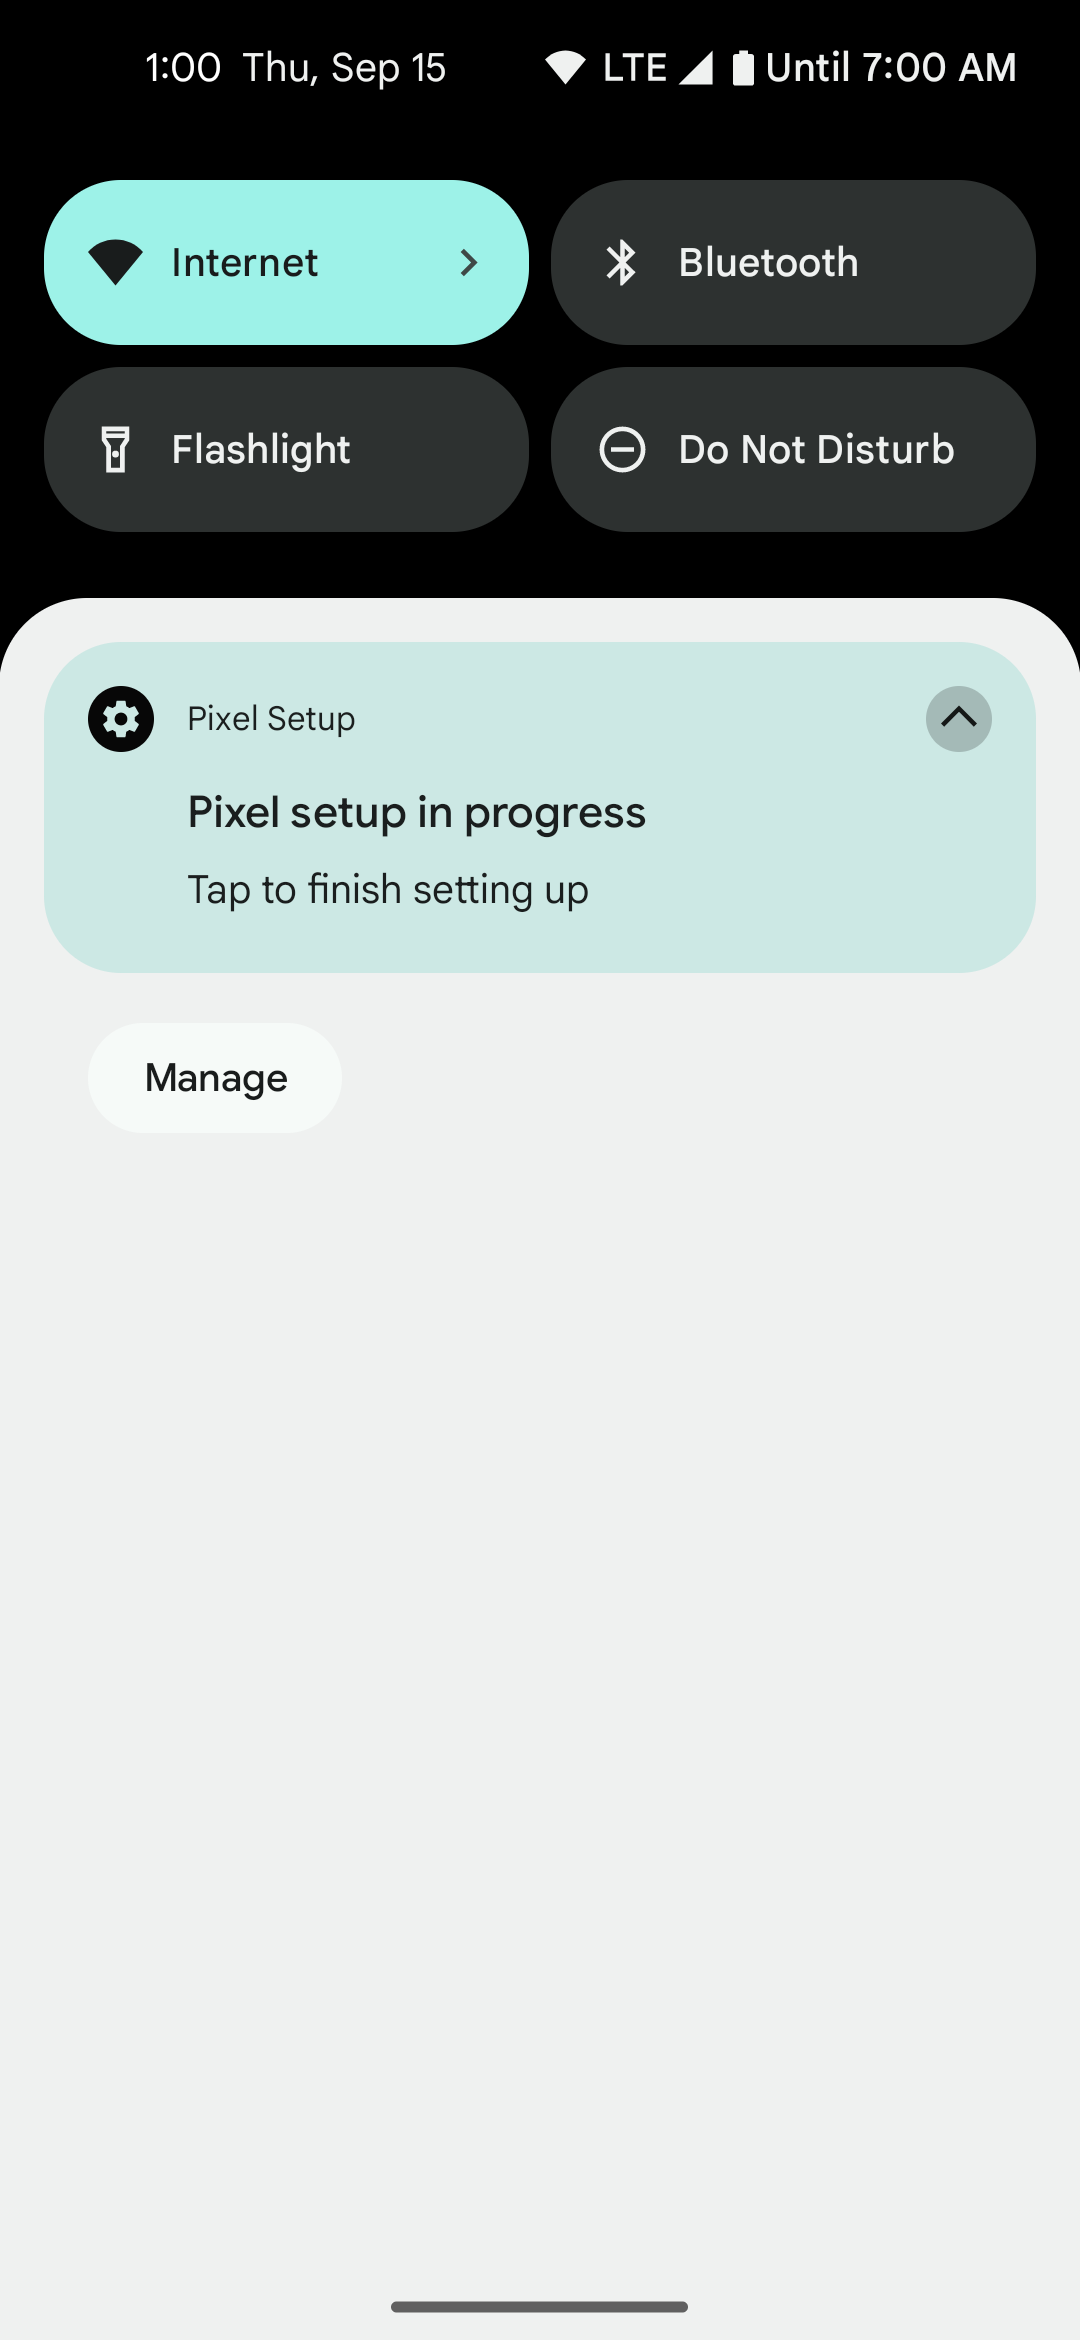 Resume Google Pixel setup